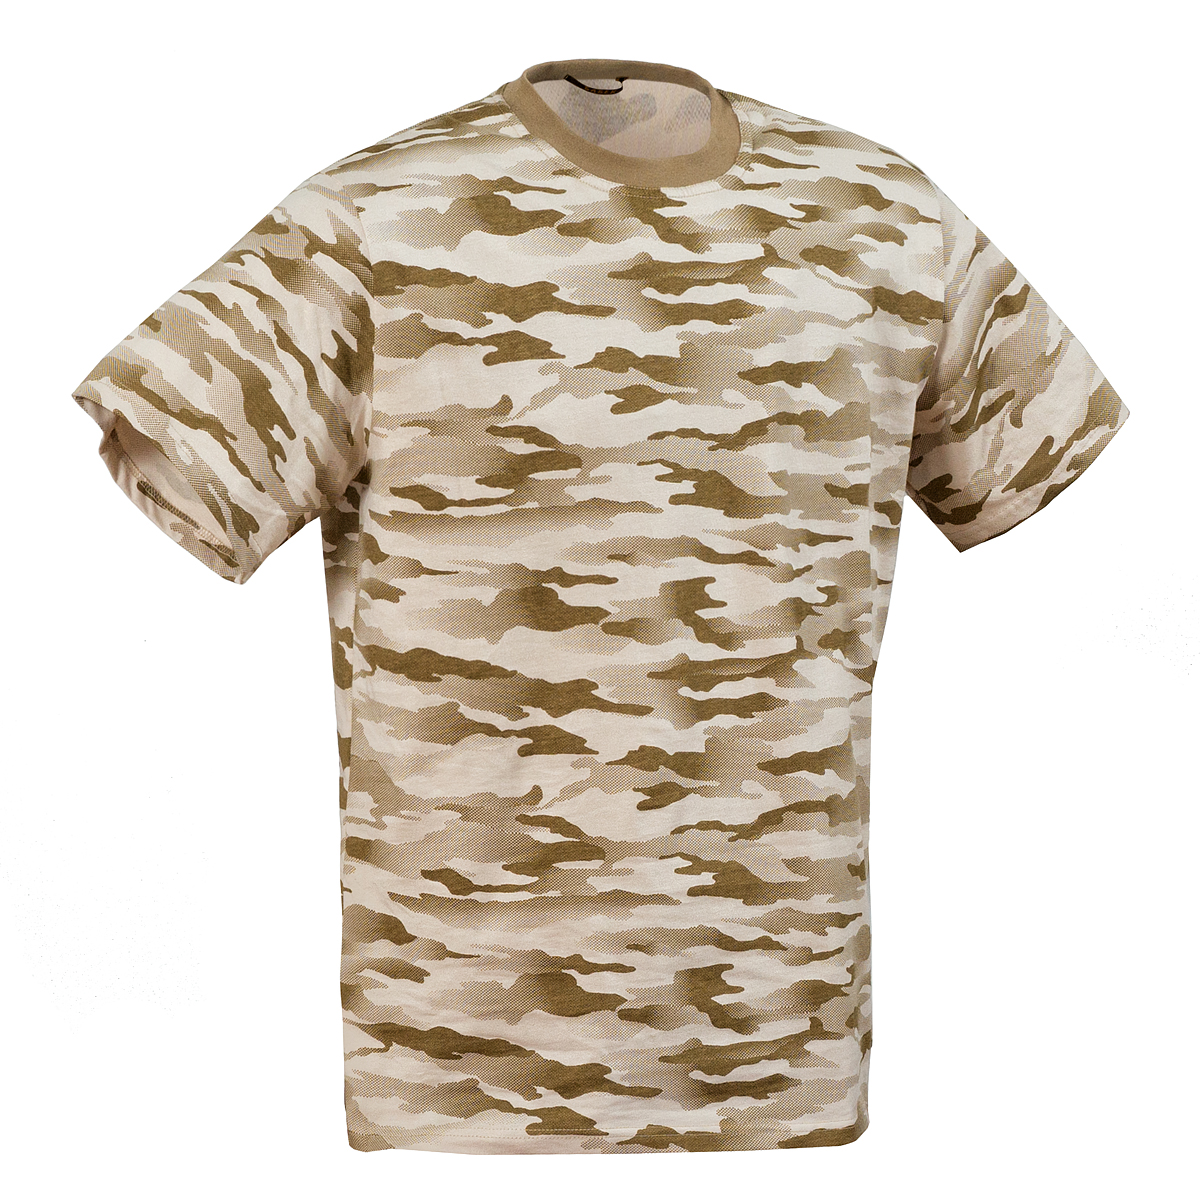 Камуфляжная футболка “Индиго” (пустыня) оптом и в розницу